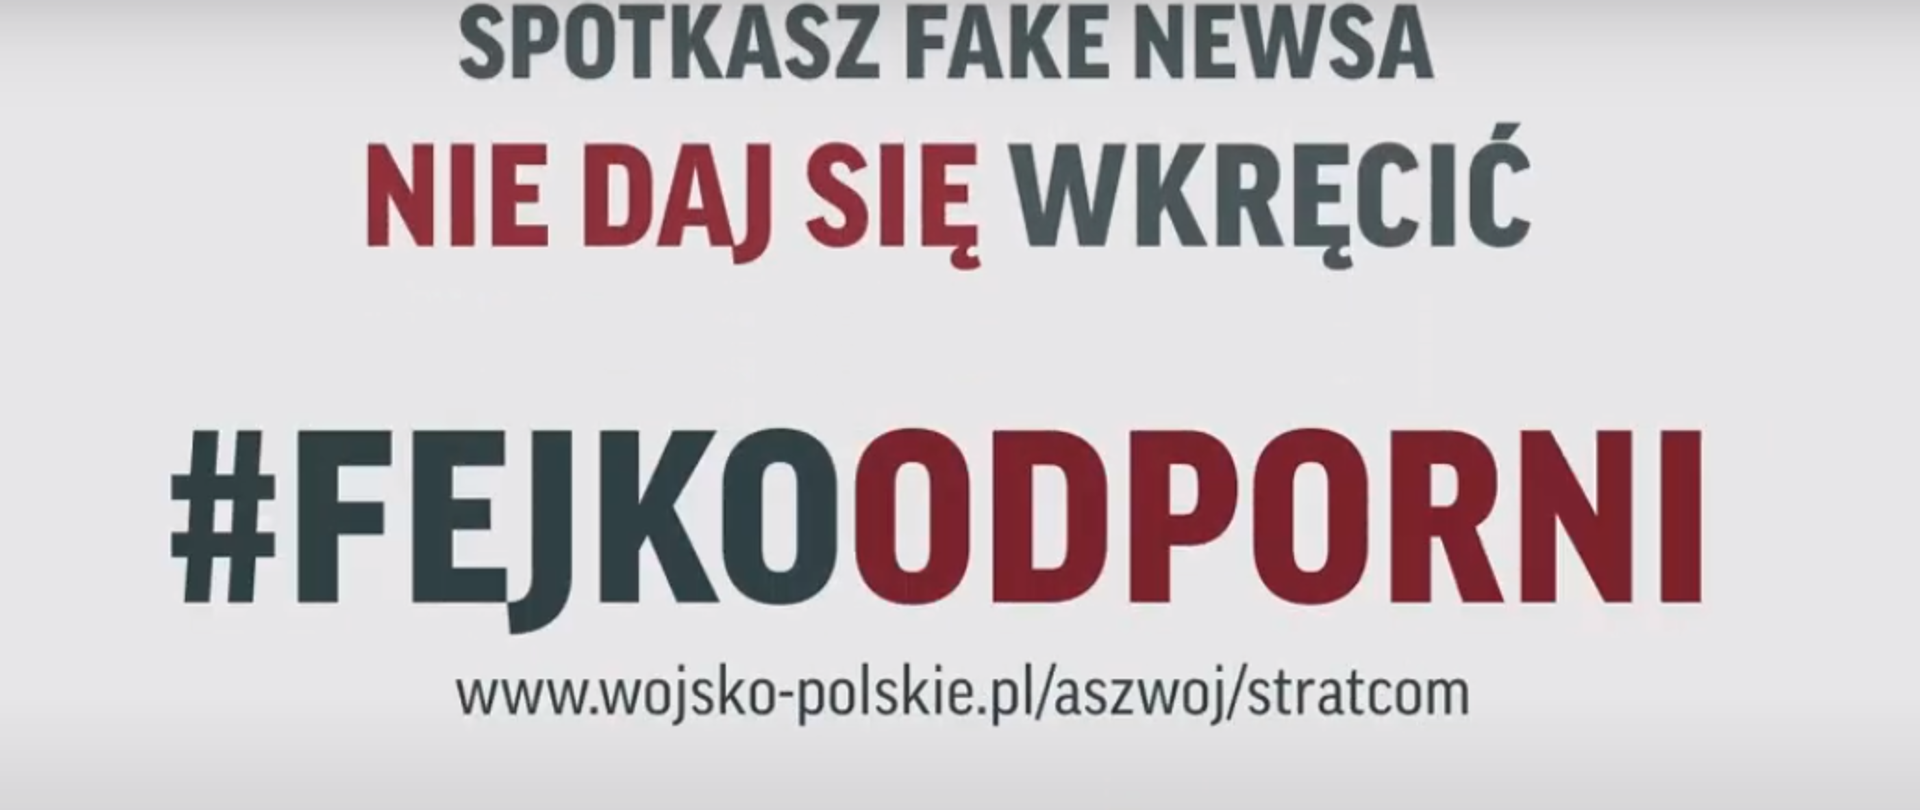 Banner z napisem "Spotkasz fake newsa nie daj się wkręcić #Fejkoodporni"